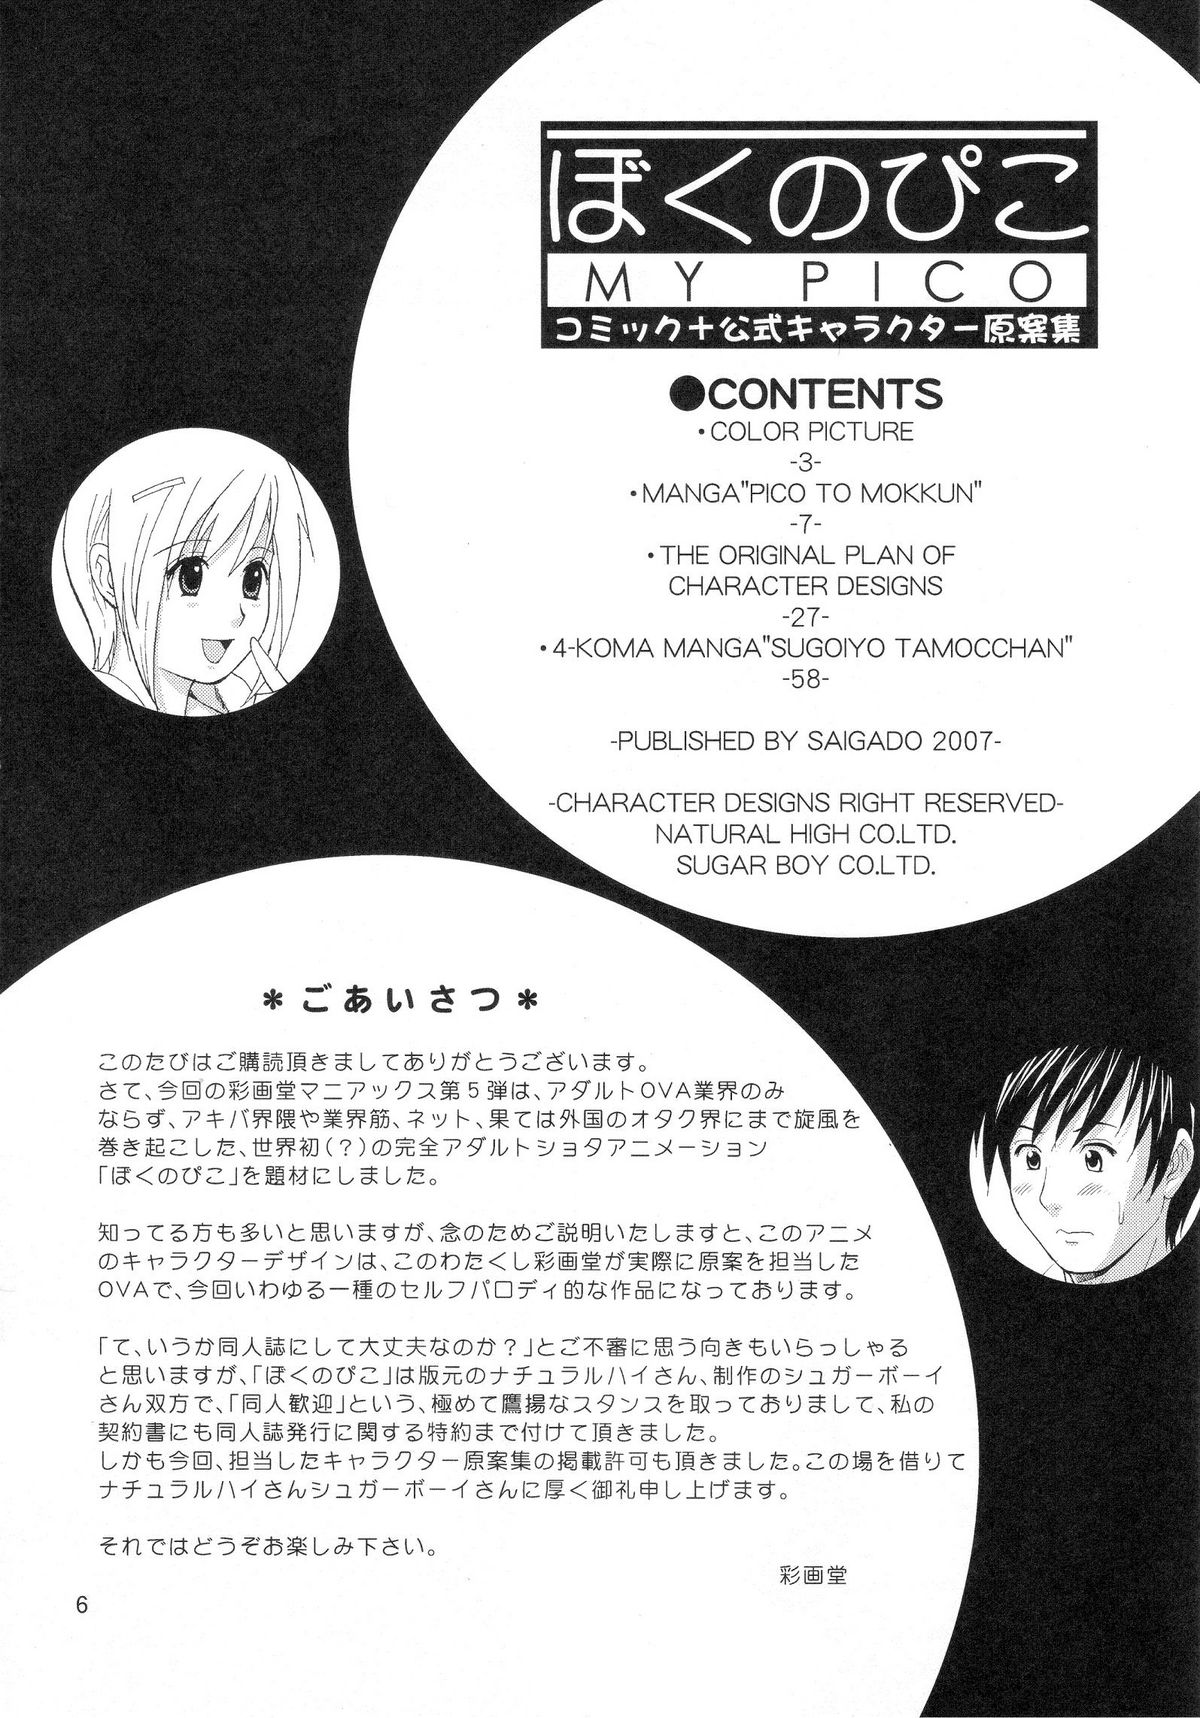 (COMIC1) [Saigado] Boku no Pico Comic + Koushiki Character Genanshuu (Boku no Pico) page 4 full